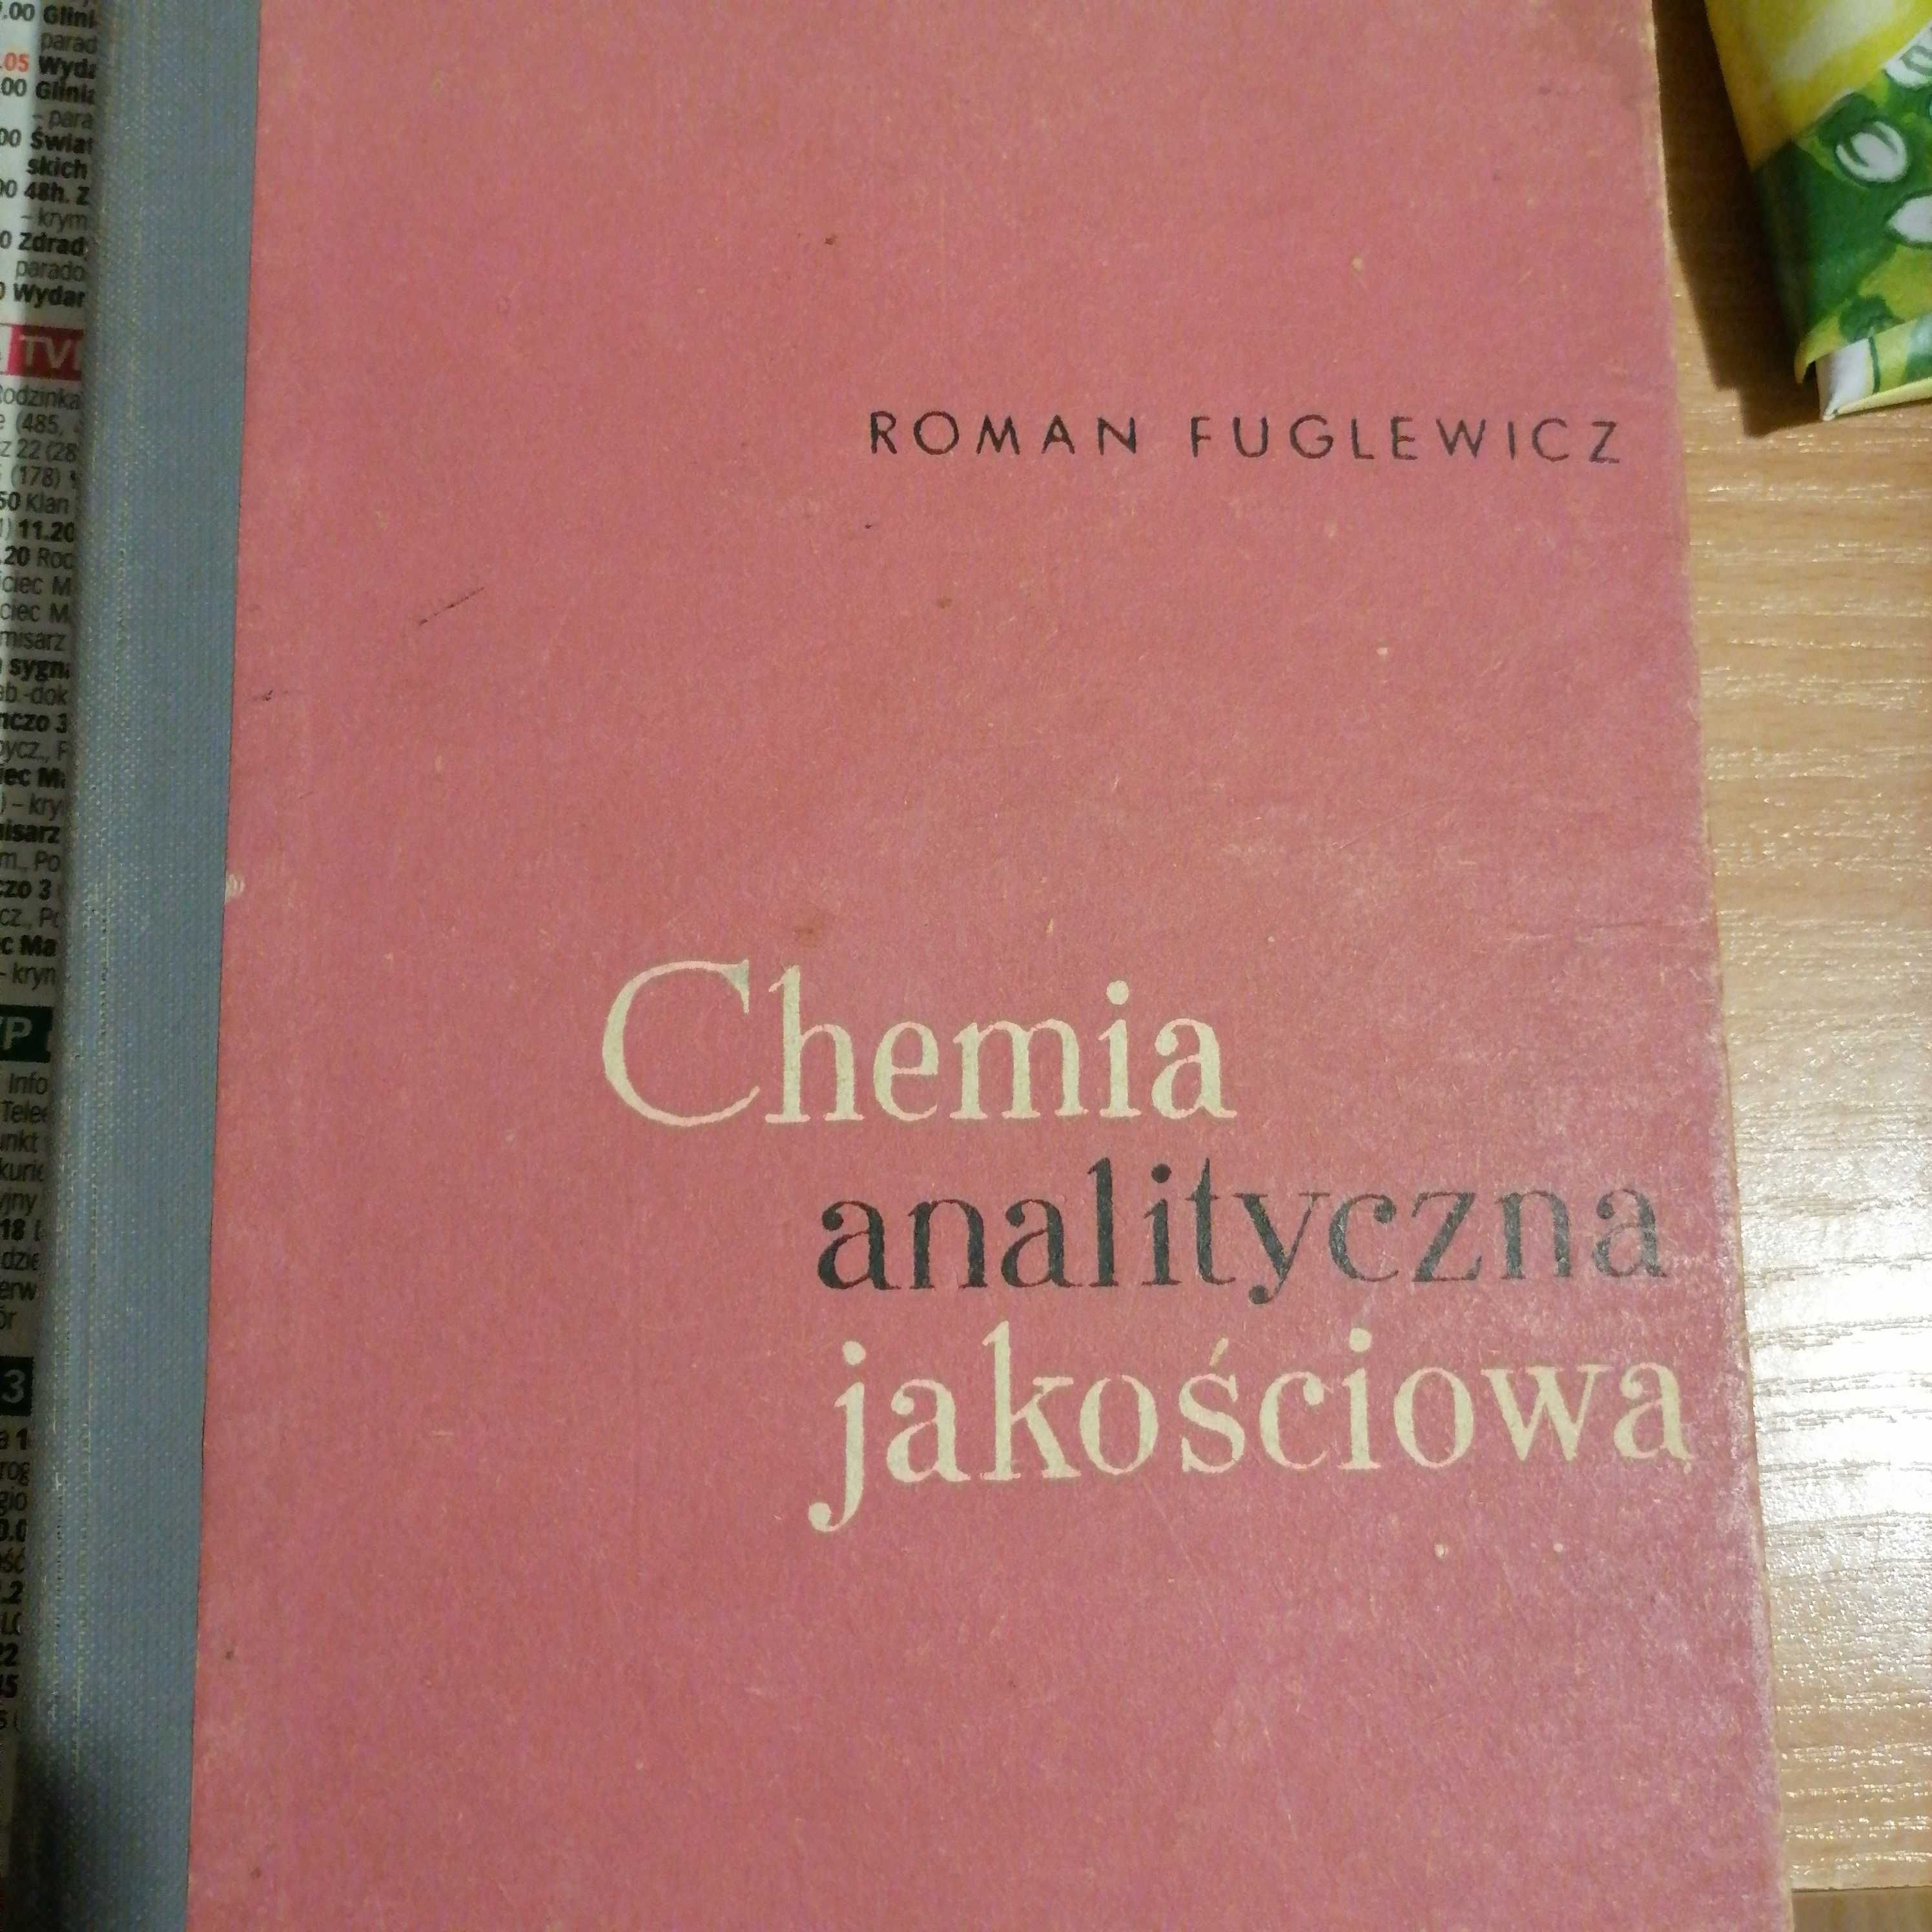 Chemia analityczna jakościowa-Roman Fuglewicz